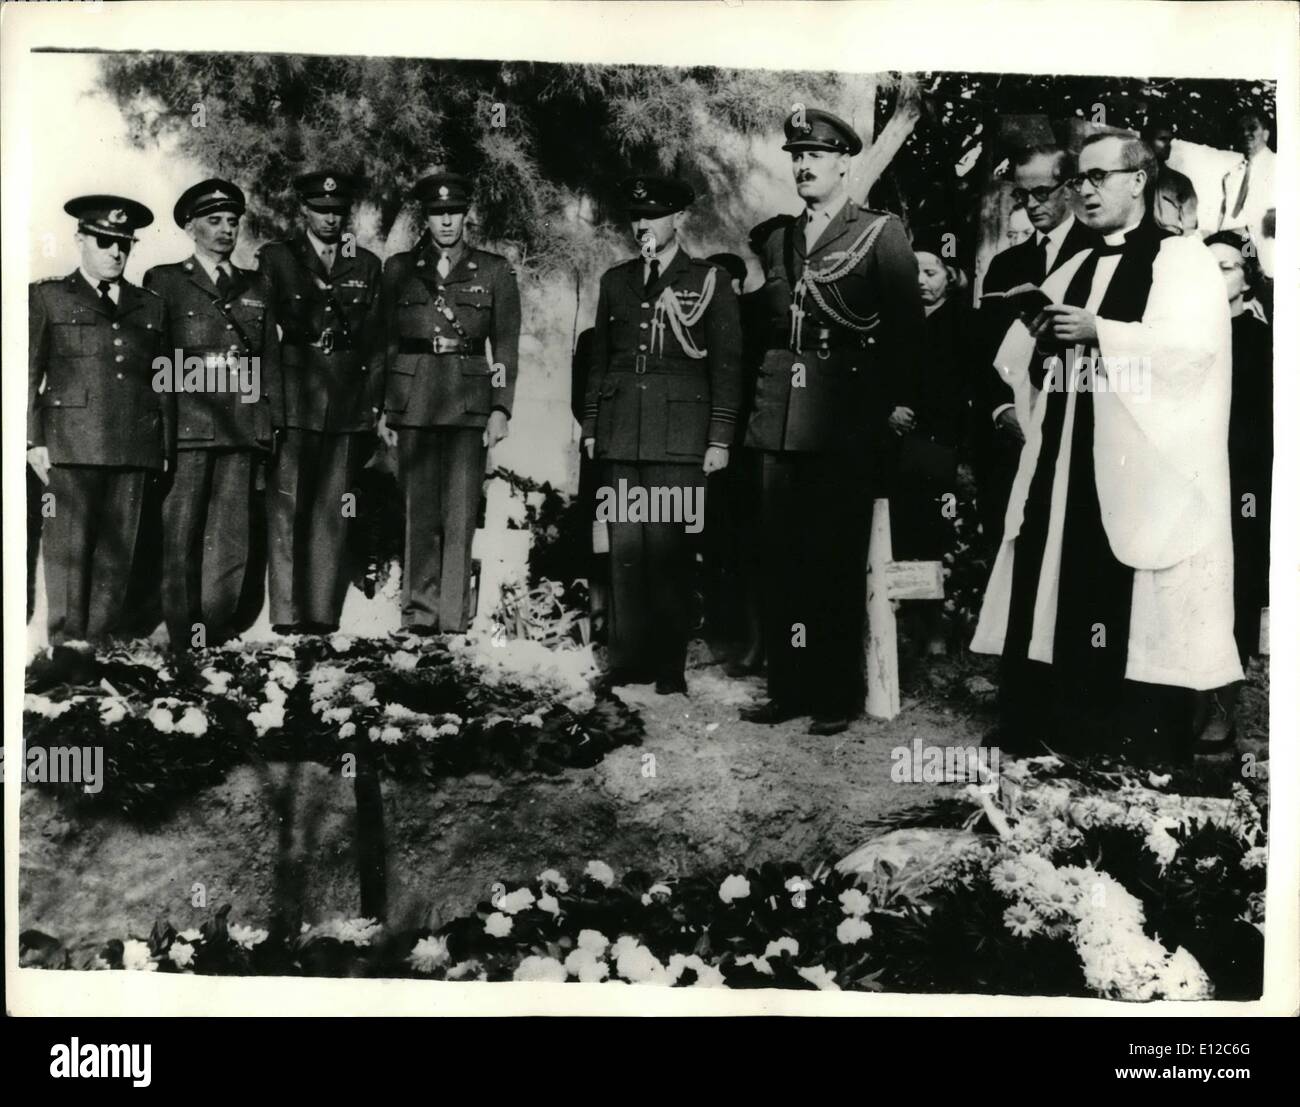 12. Dezember 2011 - Beerdigung von Frau Doran. Die Beerdigung fand vor kurzem in einen Friedhof in der Nähe von Jaffa, von Frau Joyce Doran, Ehefrau von Wing Commander Kenneth Doran, D.F.C., der Schuss tot etwa eine Meile westlich des Jordan gefunden wurde. Frau Doran wurde nach einer weit verbreiteten Suche für sie gefunden. Foto zeigt bei der Beerdigung sind (von rechts nach links): der Pastor; Das britische Militär-Attache in Israel, Oberst N. Cowley und Wing Commander Doran. Stockfoto